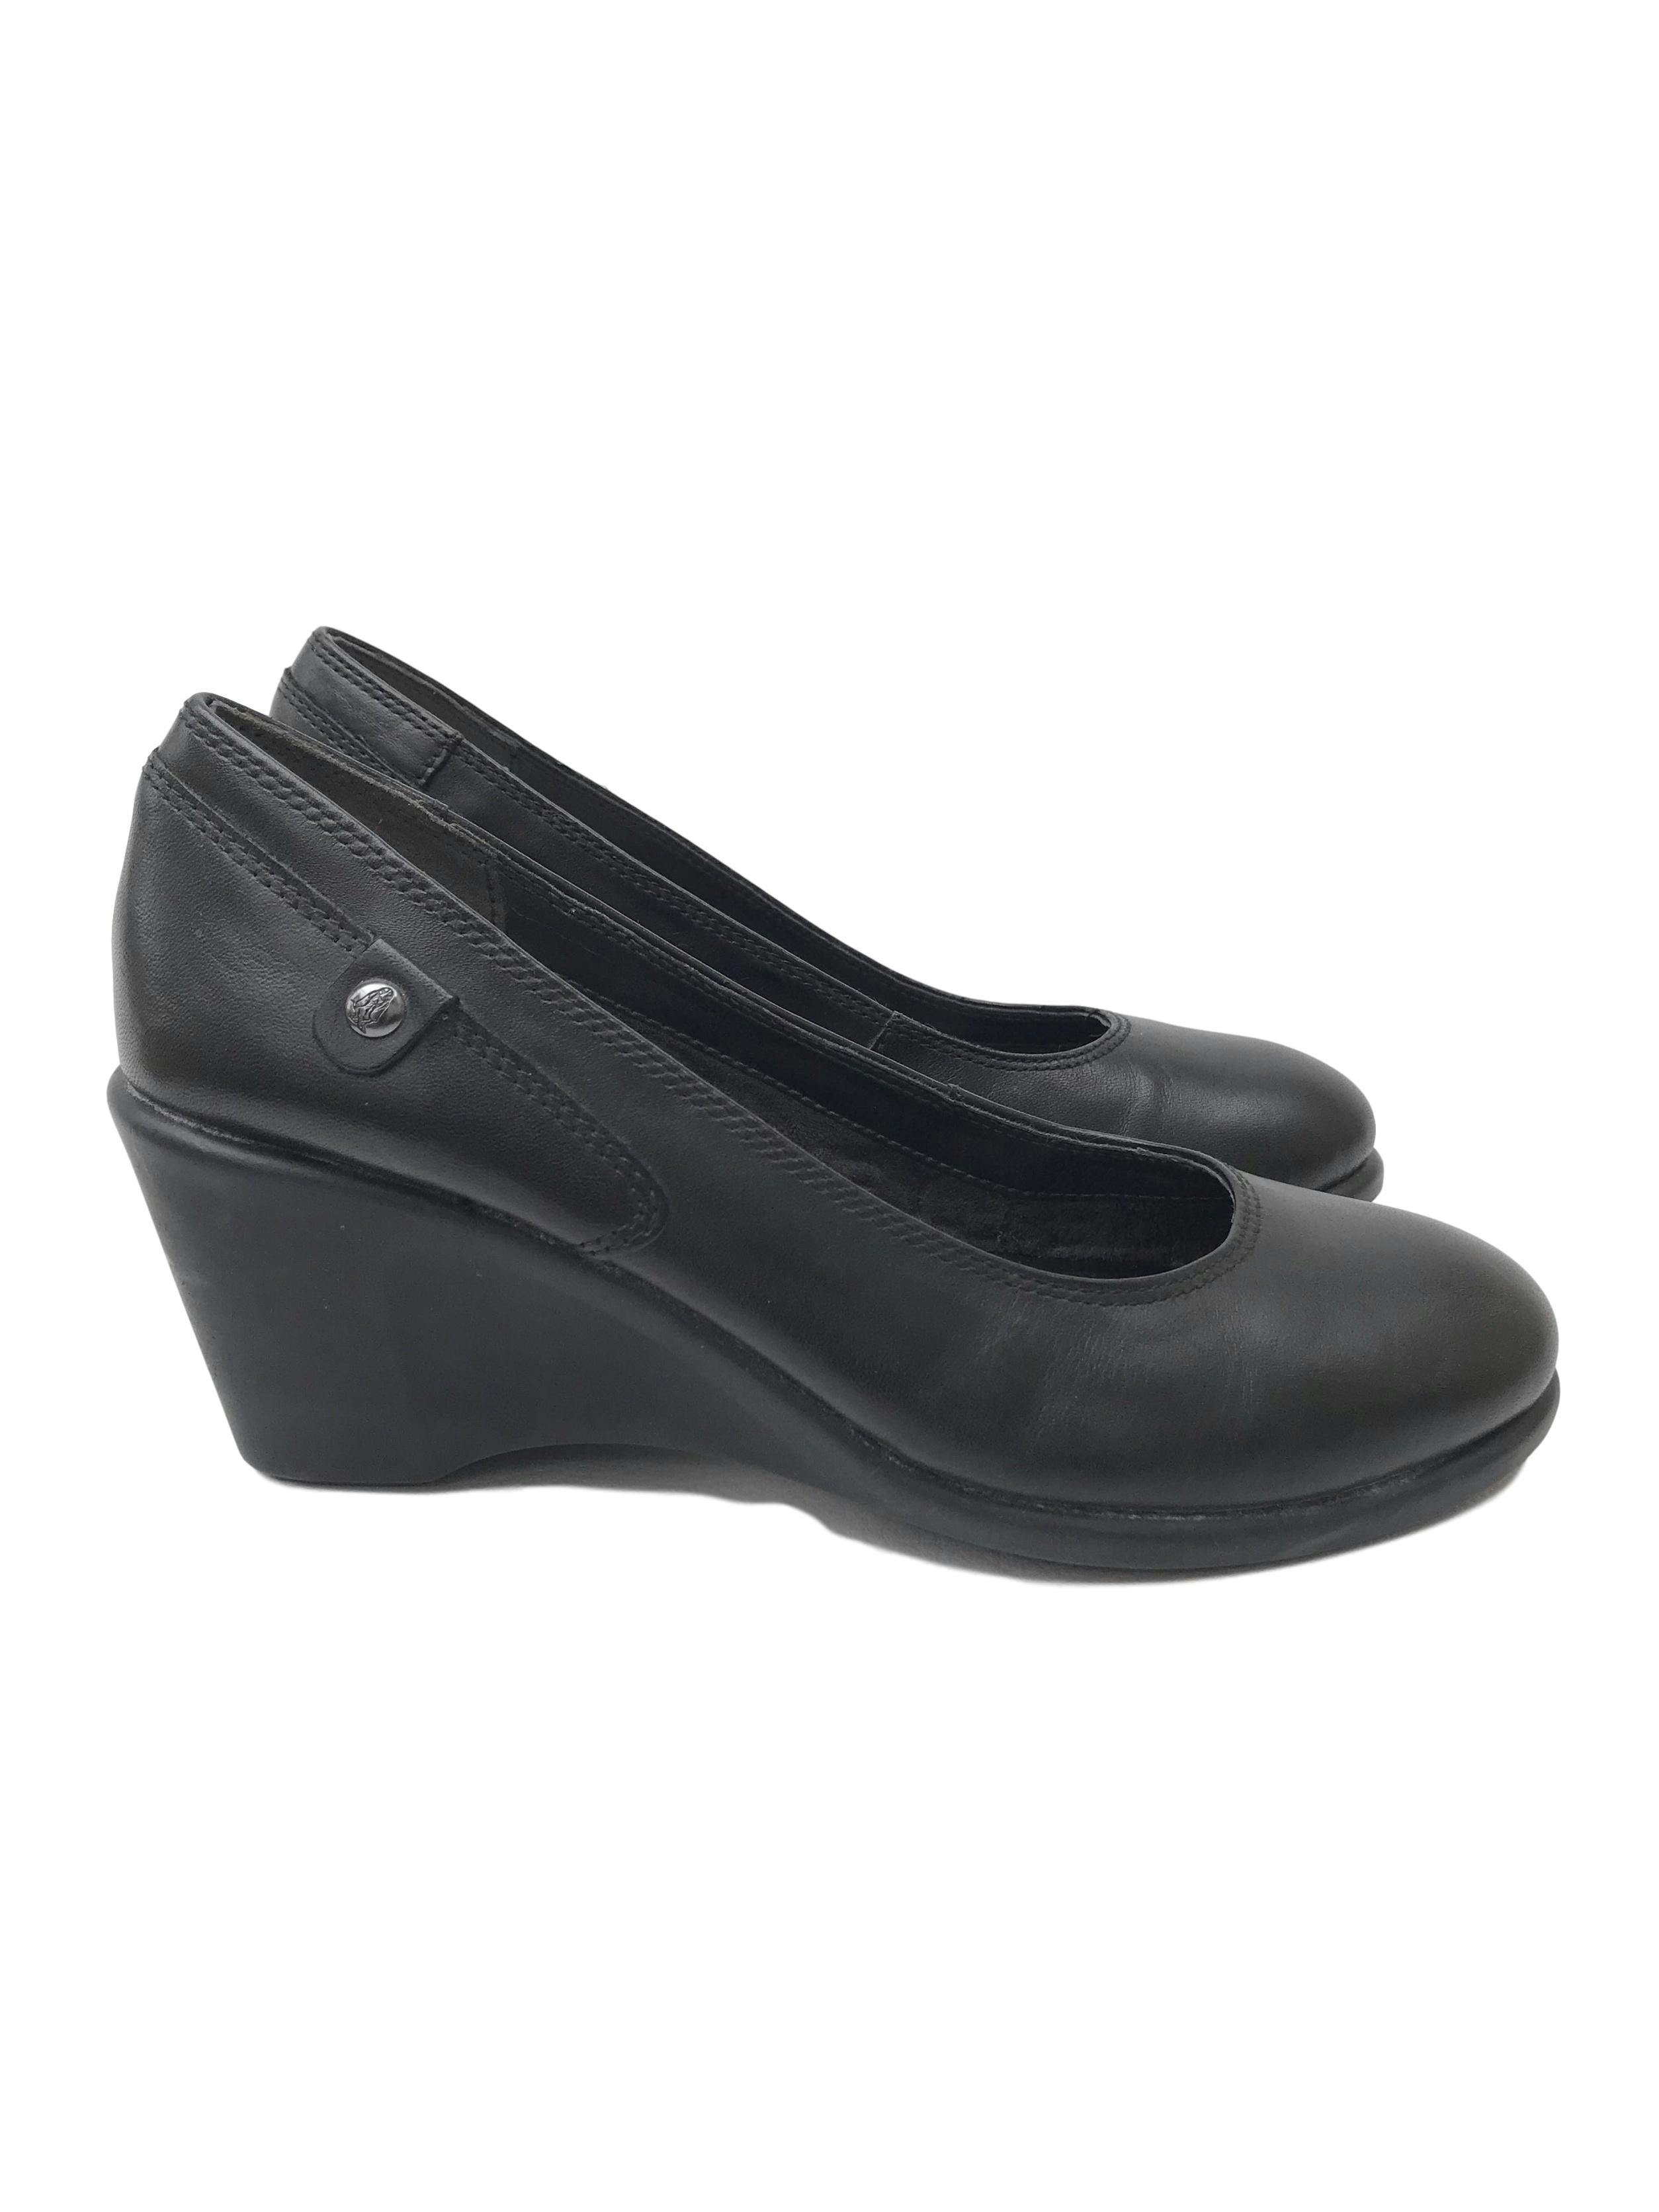 Zapatos Hush Puppies de cuero negro, taco cuña 7cm, comfort flex. Estado 9/10. Precio original S/ 250